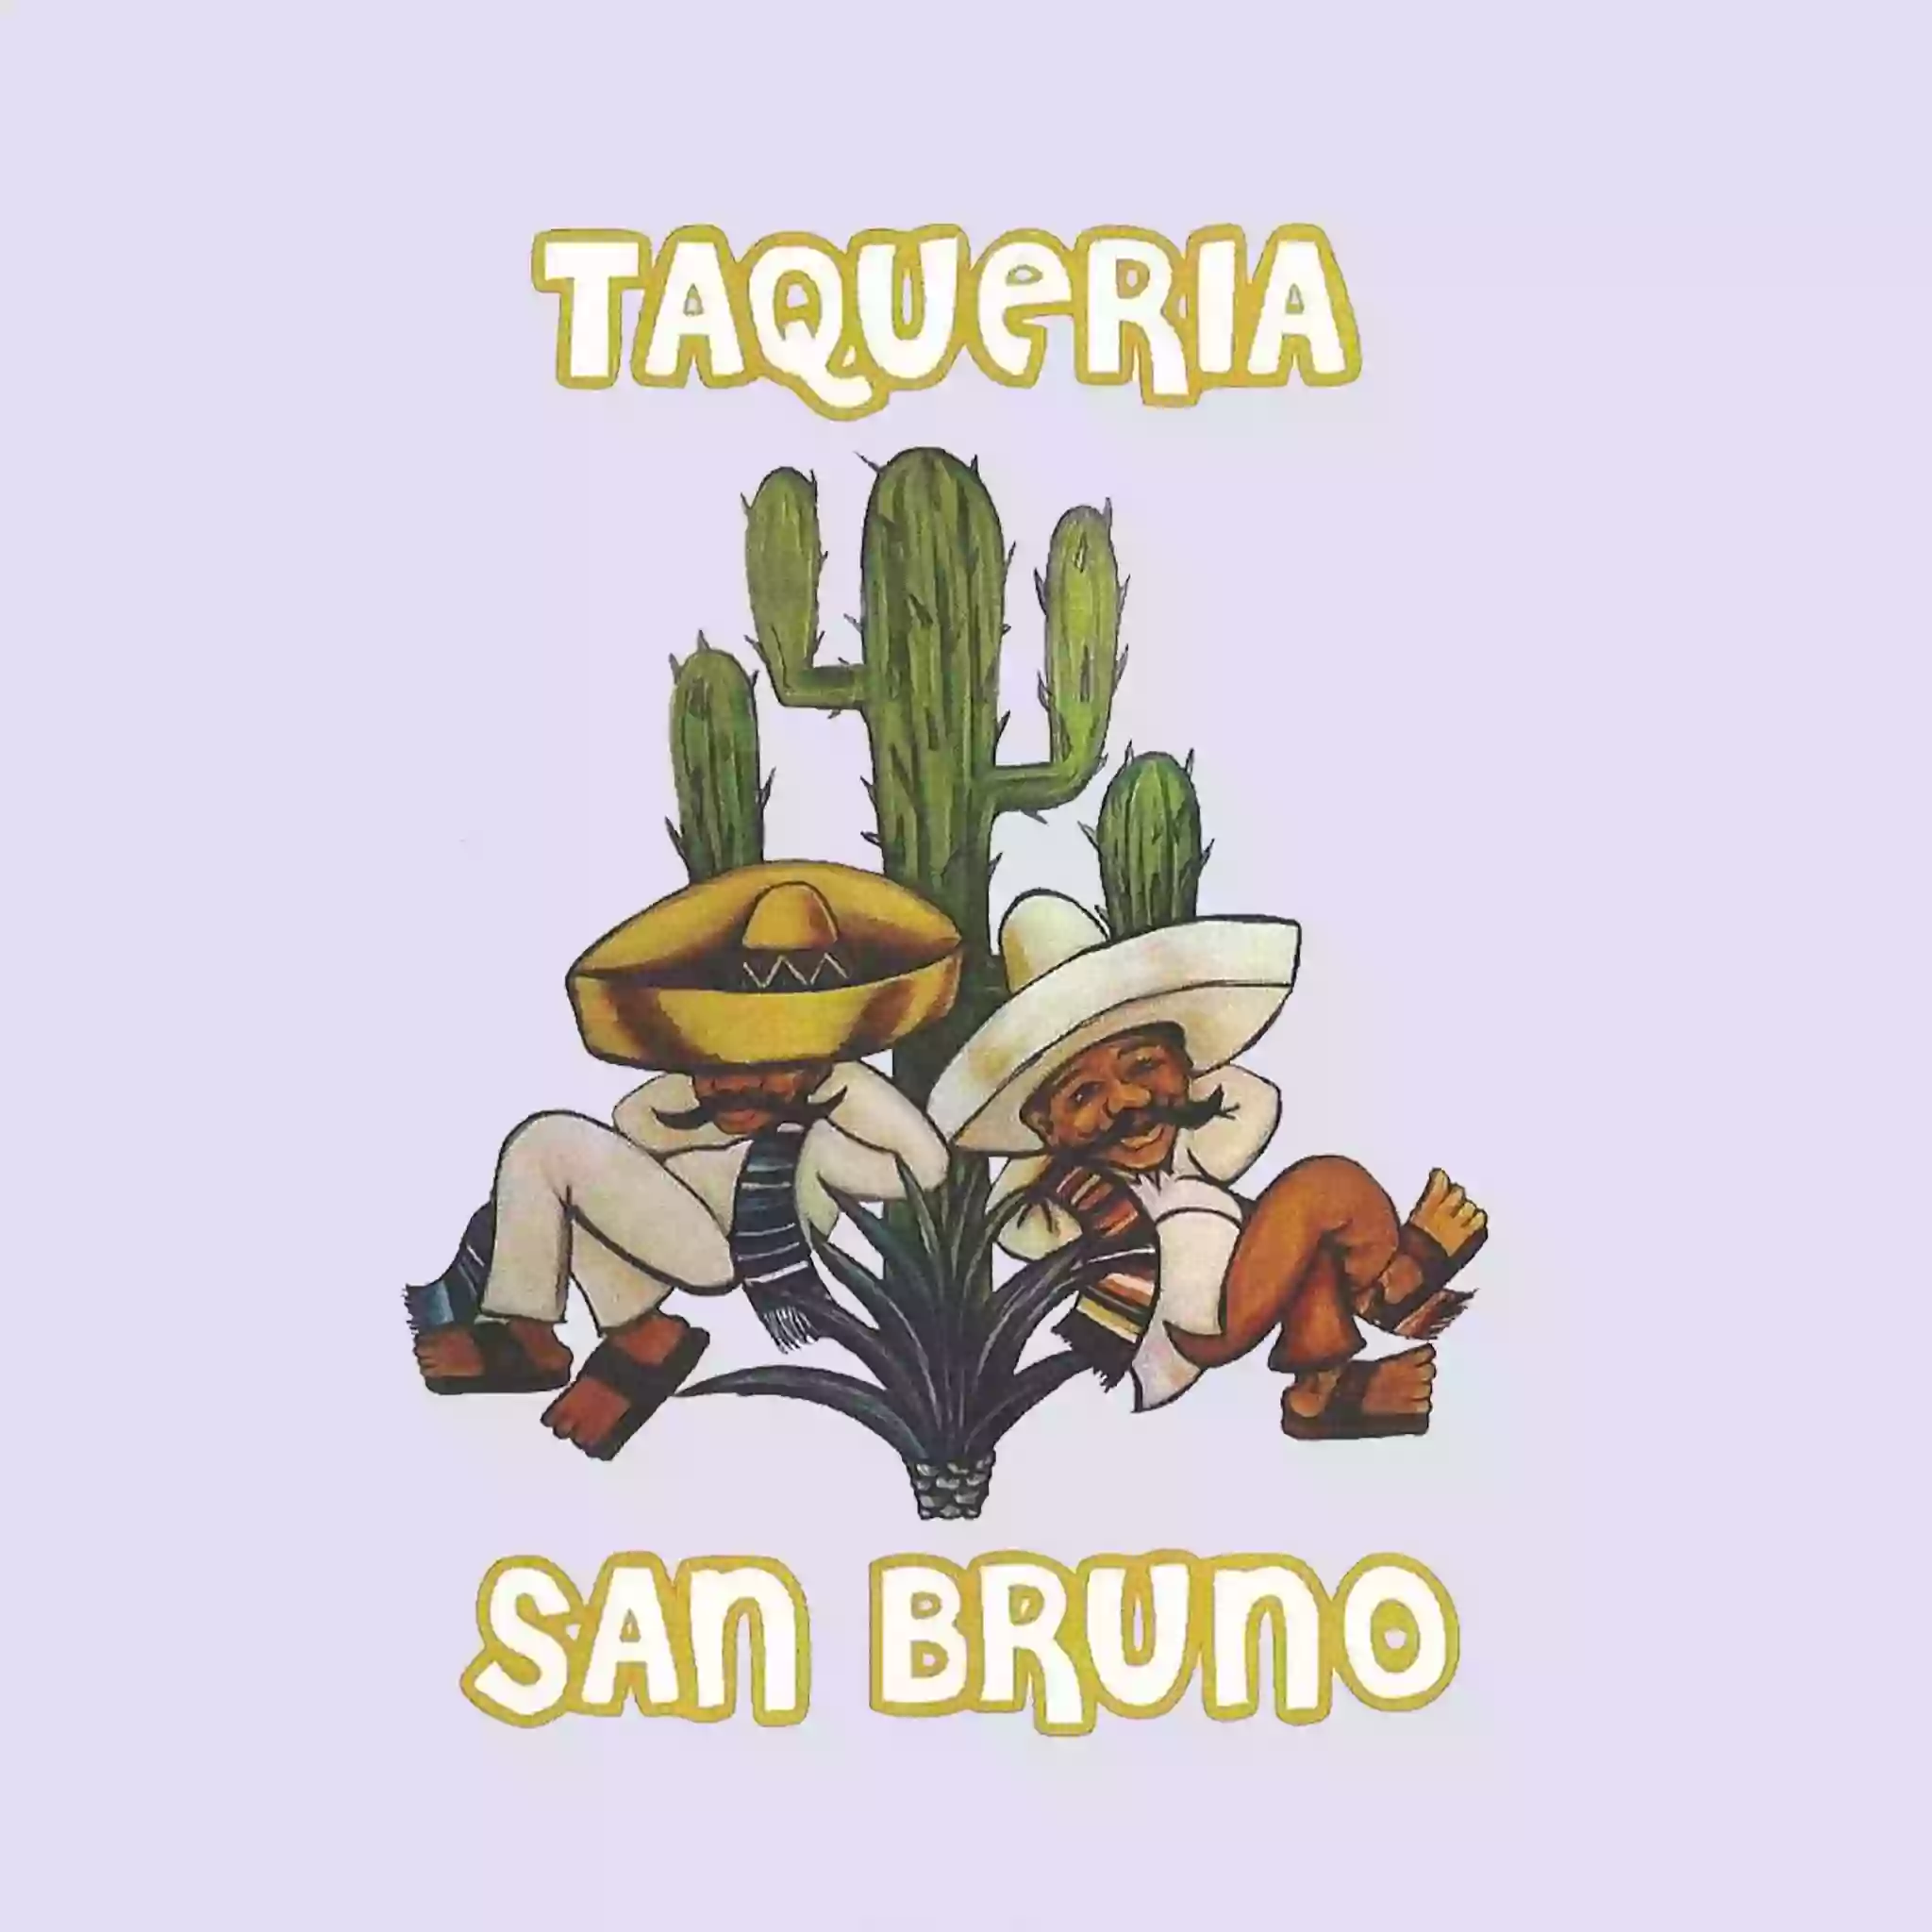 Taqueria San Bruno